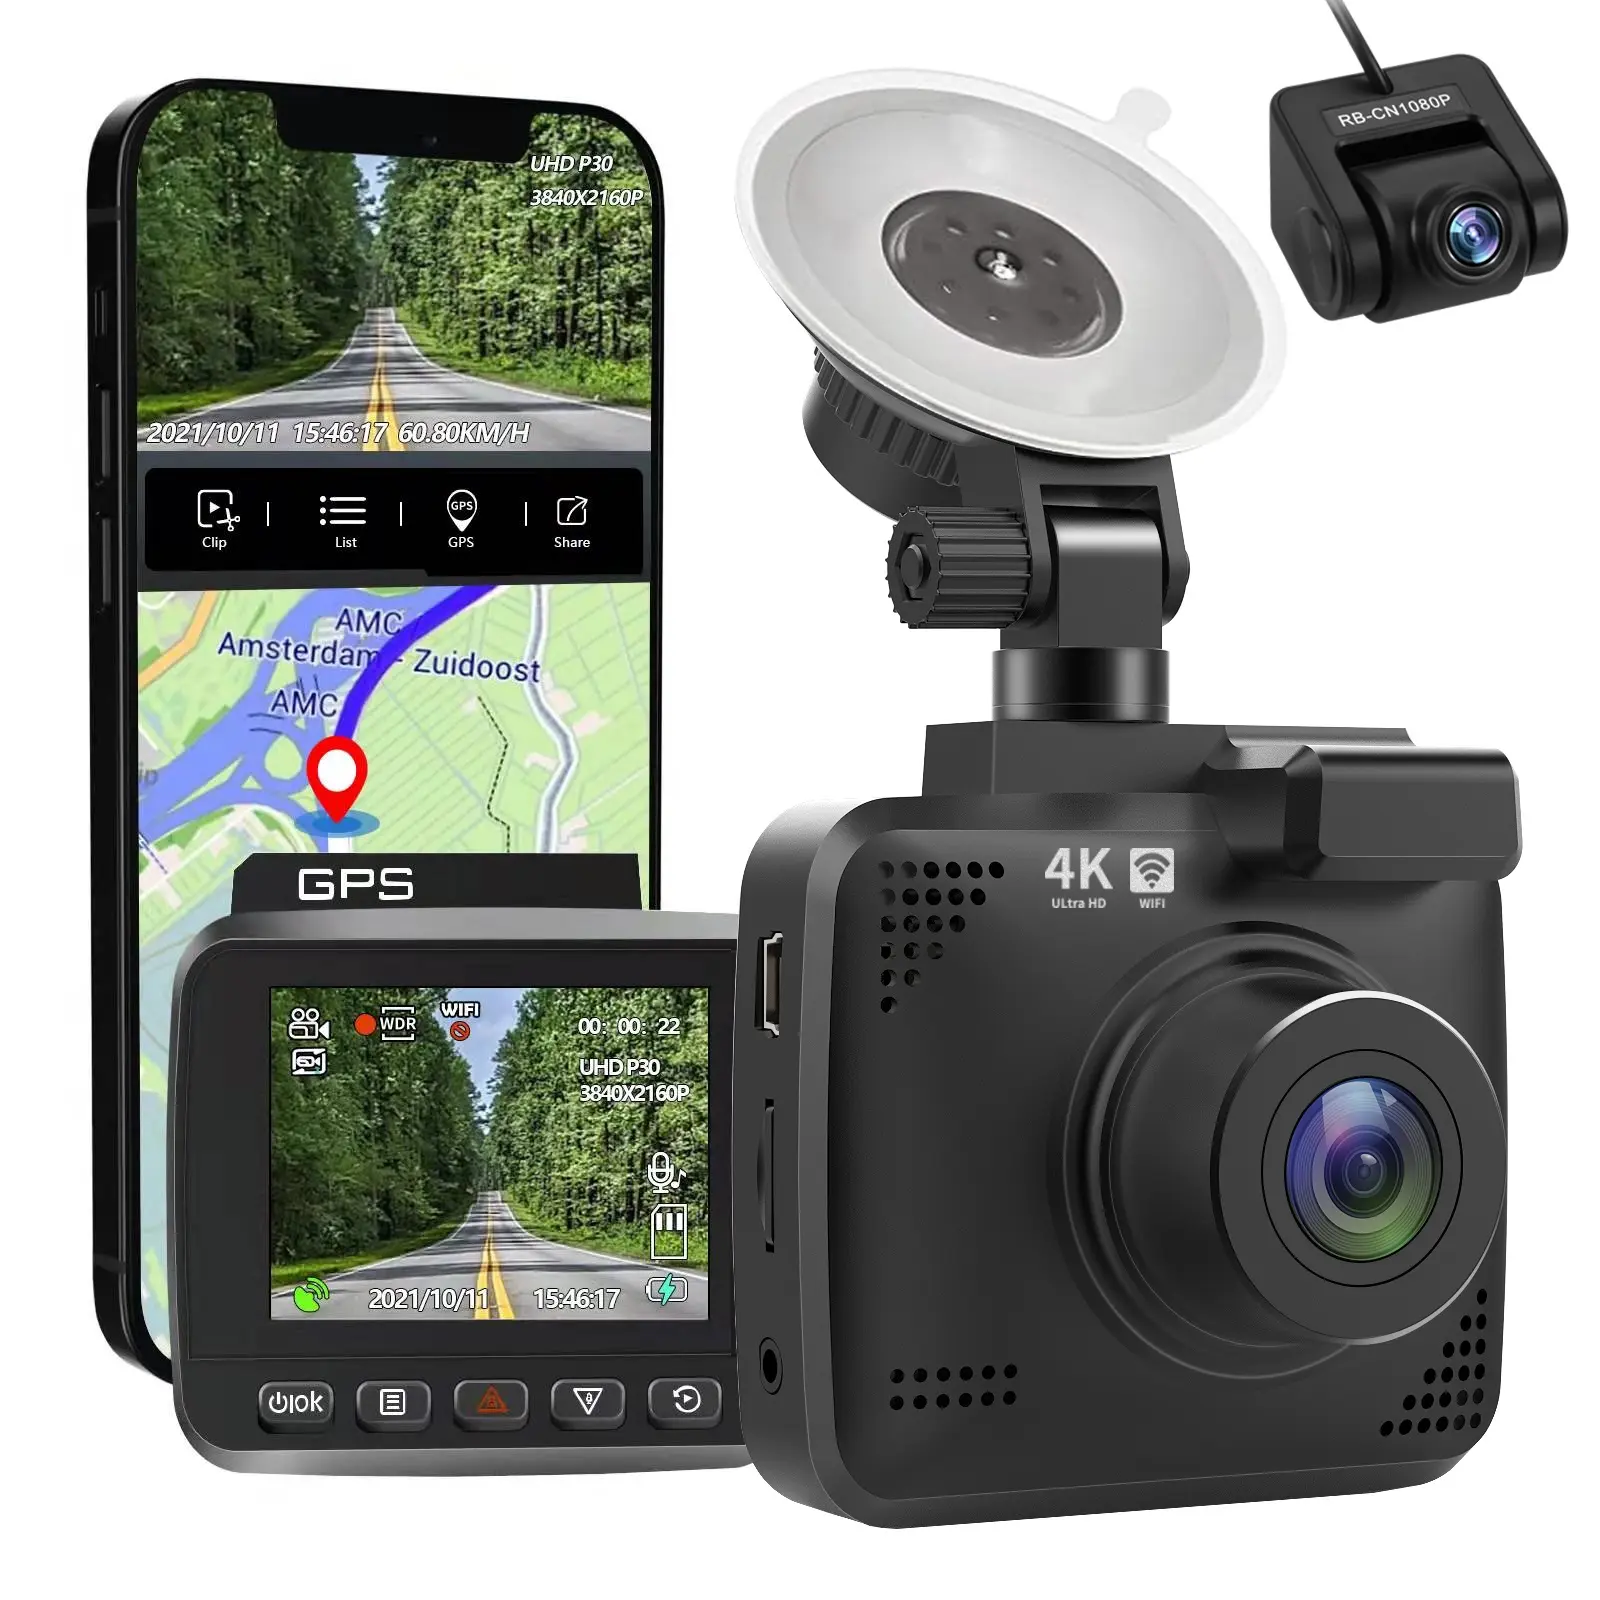 WiFi ön ve arka 4K 2K 1080P NOVATEK dahili GPS App kontrol Dash kamera Sony sensörü araç çift objektifli çizgi kam araba kara kutusu